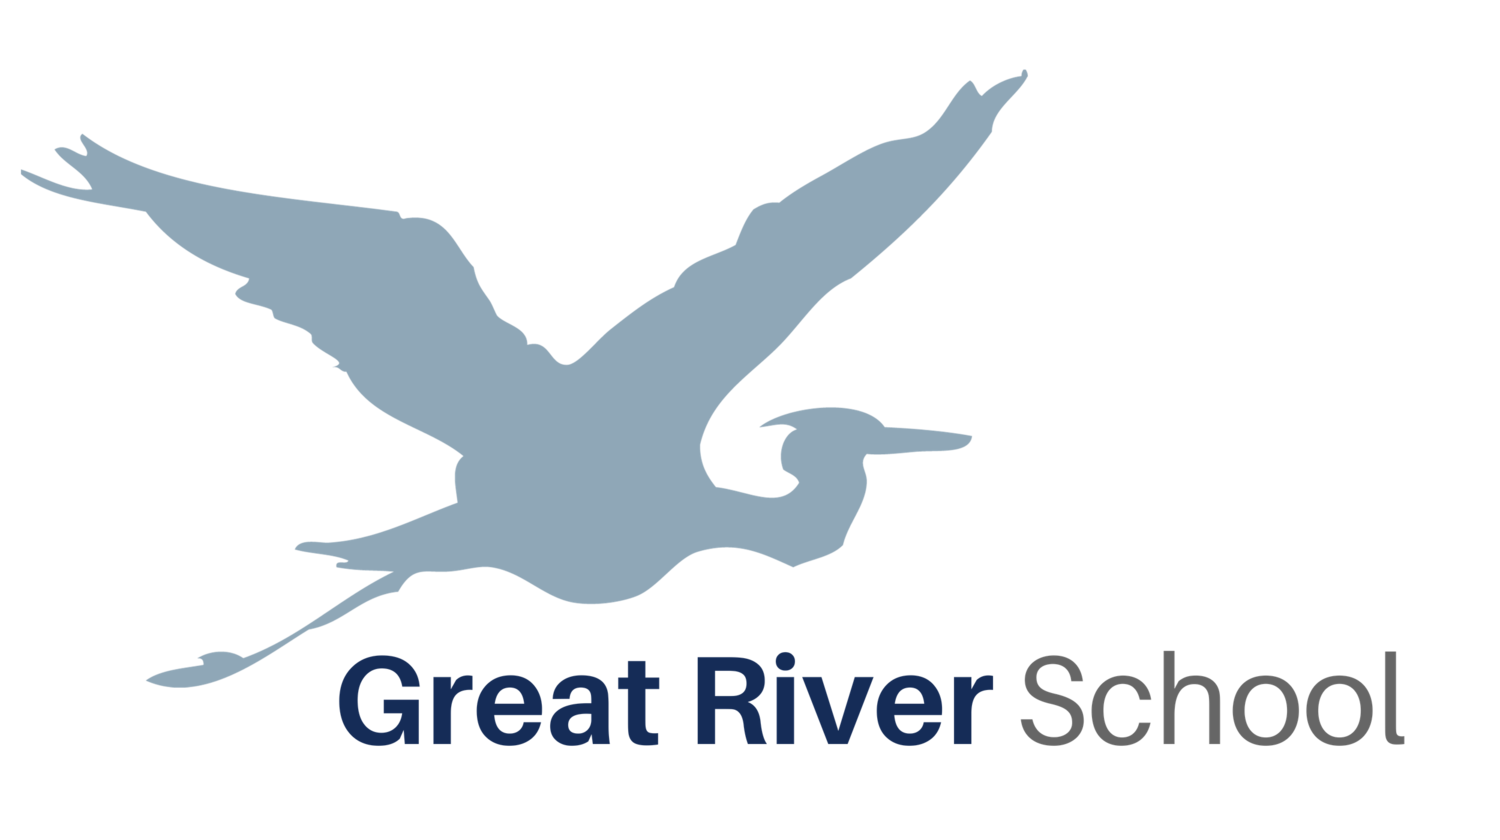 Great River School